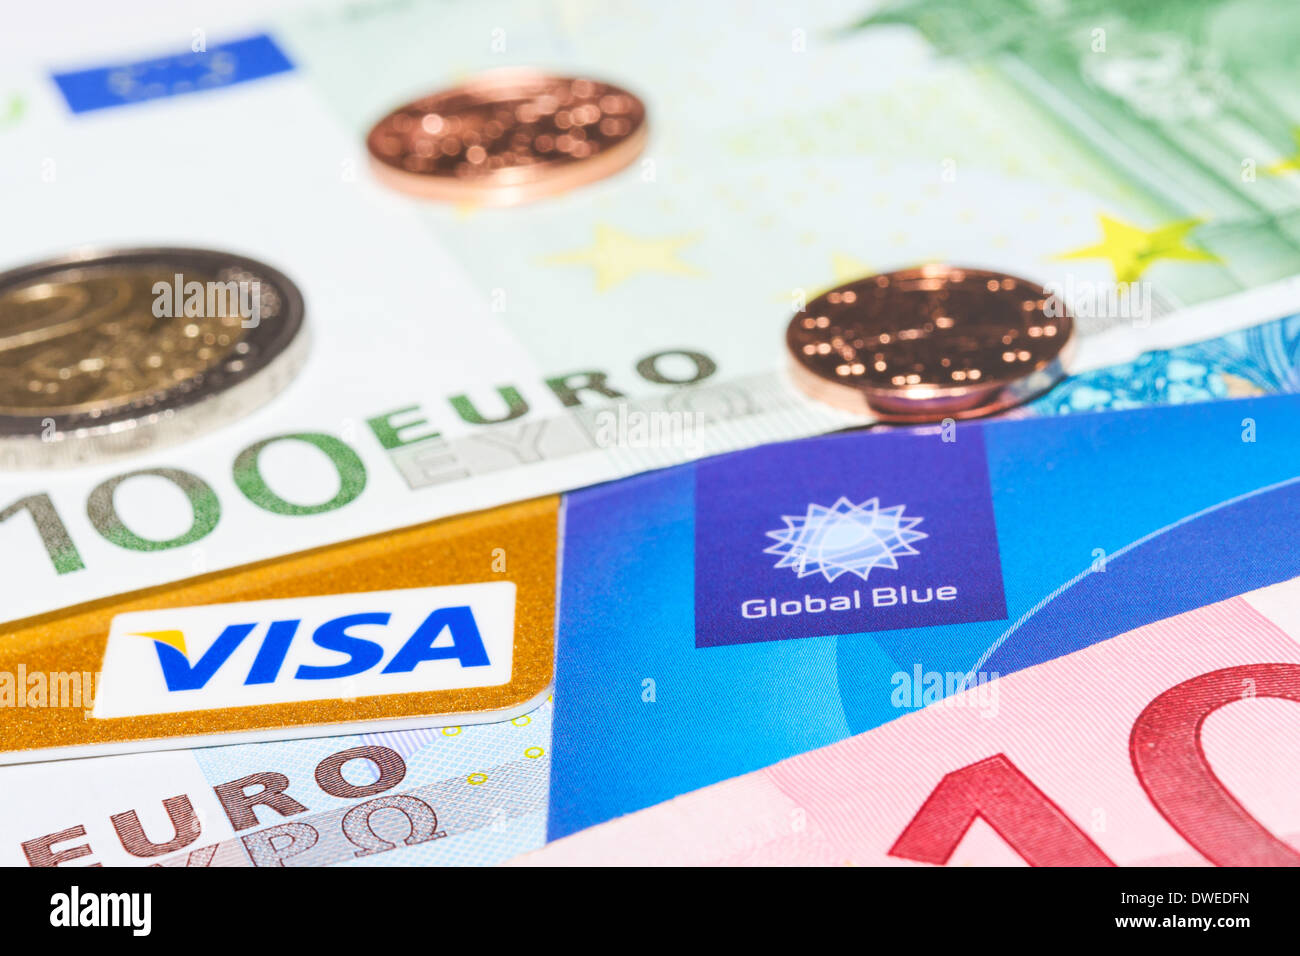 MUNICH, ALLEMAGNE - le 23 février 2014 : Visa carte de crédit et de l'impôt Global Blue gratuitement contre de l'argent en espèces Banque D'Images